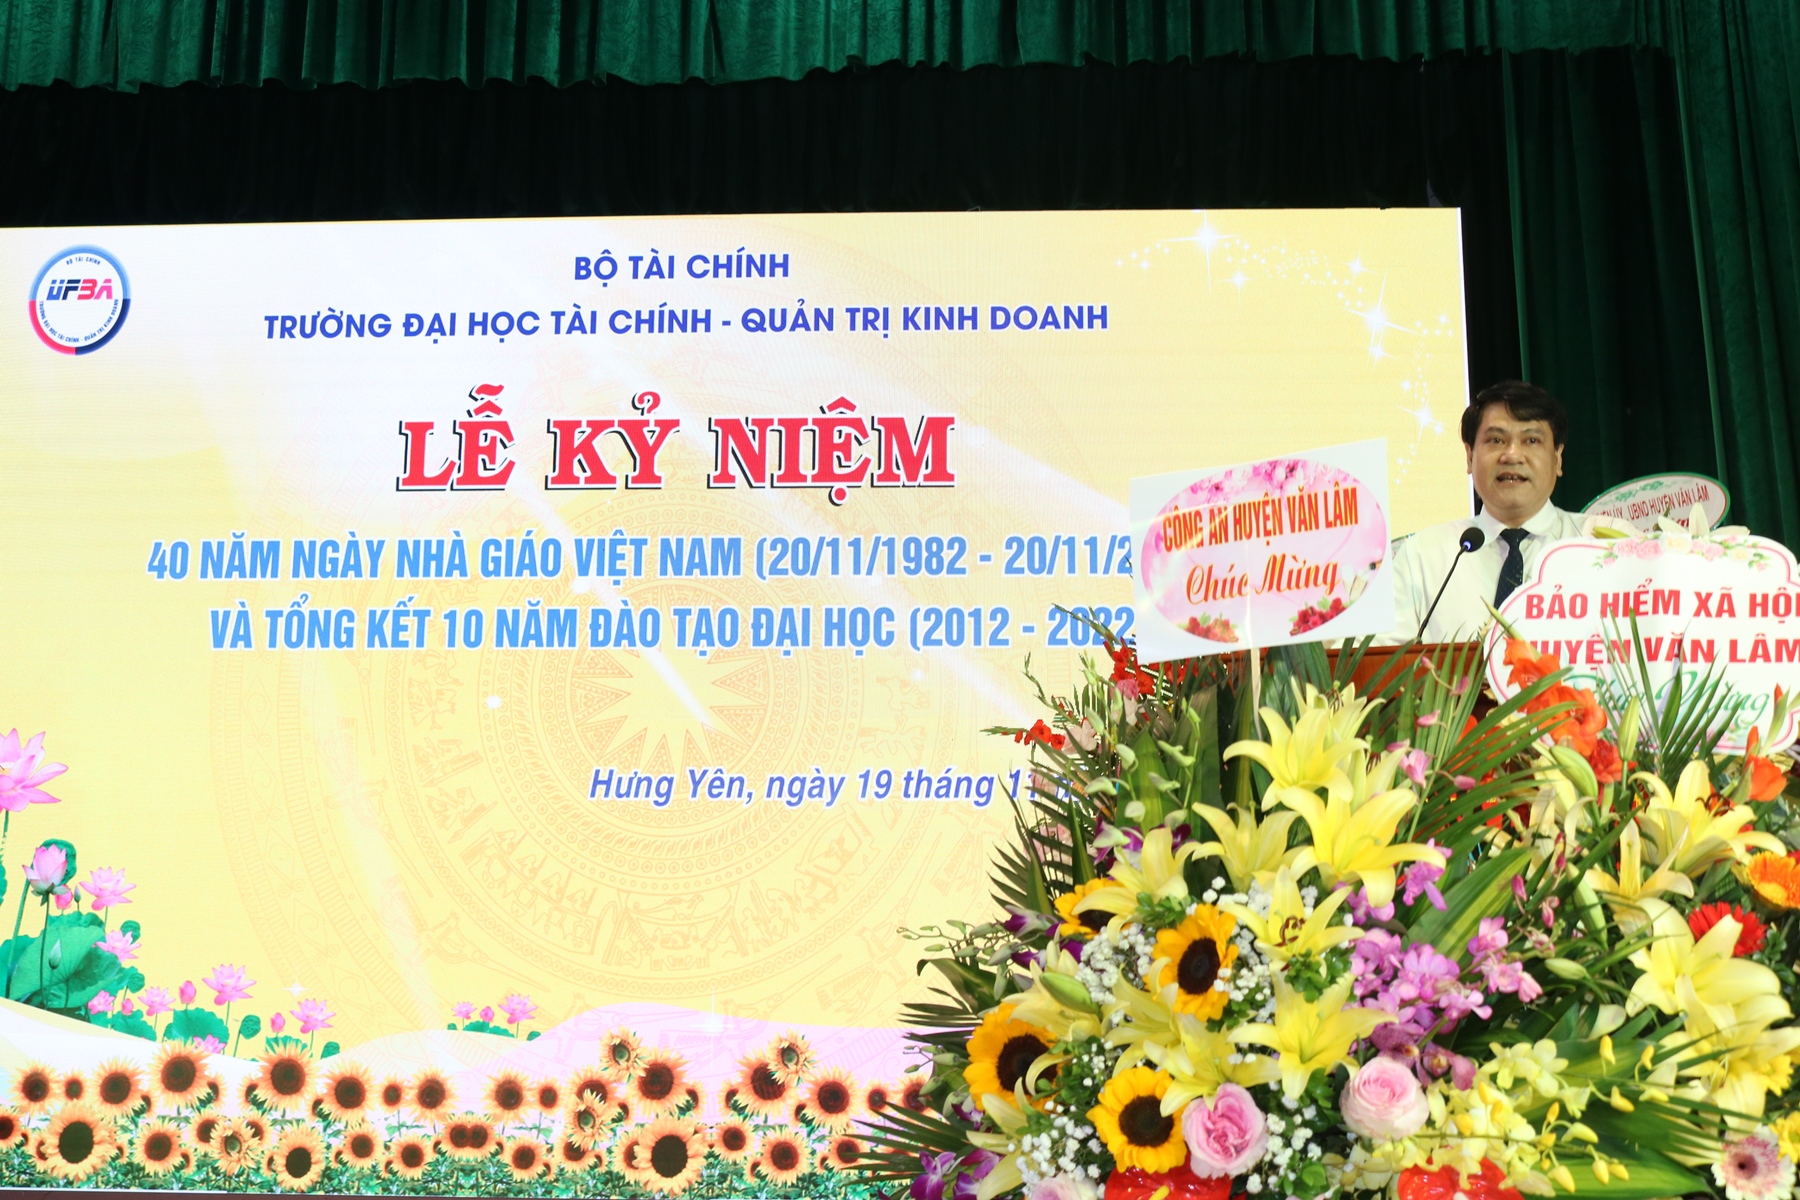 Lễ kỷ niệm 40 năm ngày Nhà giáo Việt Nam 20/11 và tổng kết 10 năm đào tạo đại học